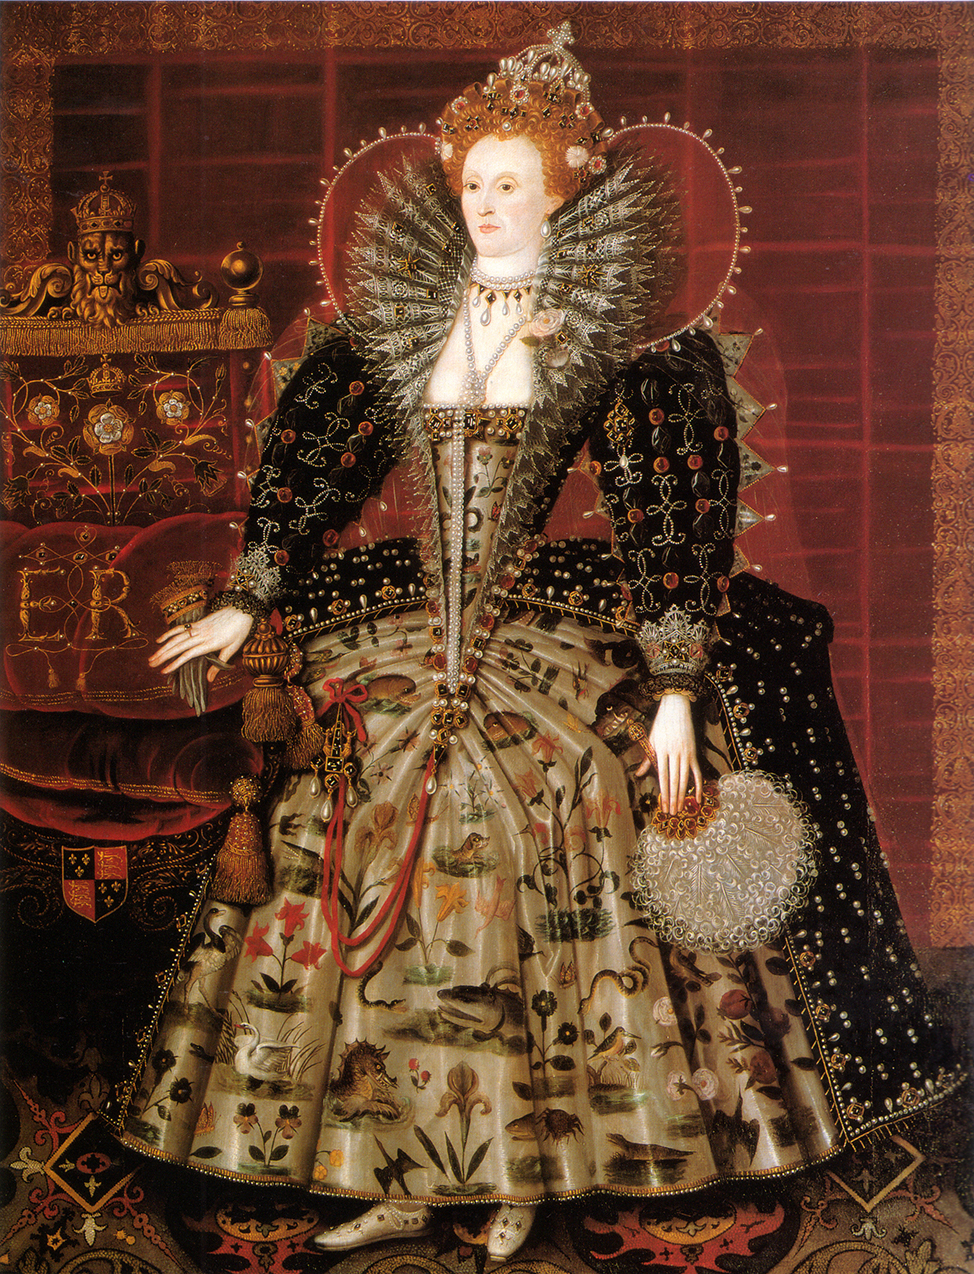 Hardwick Portrait of Queen Elizabeth I